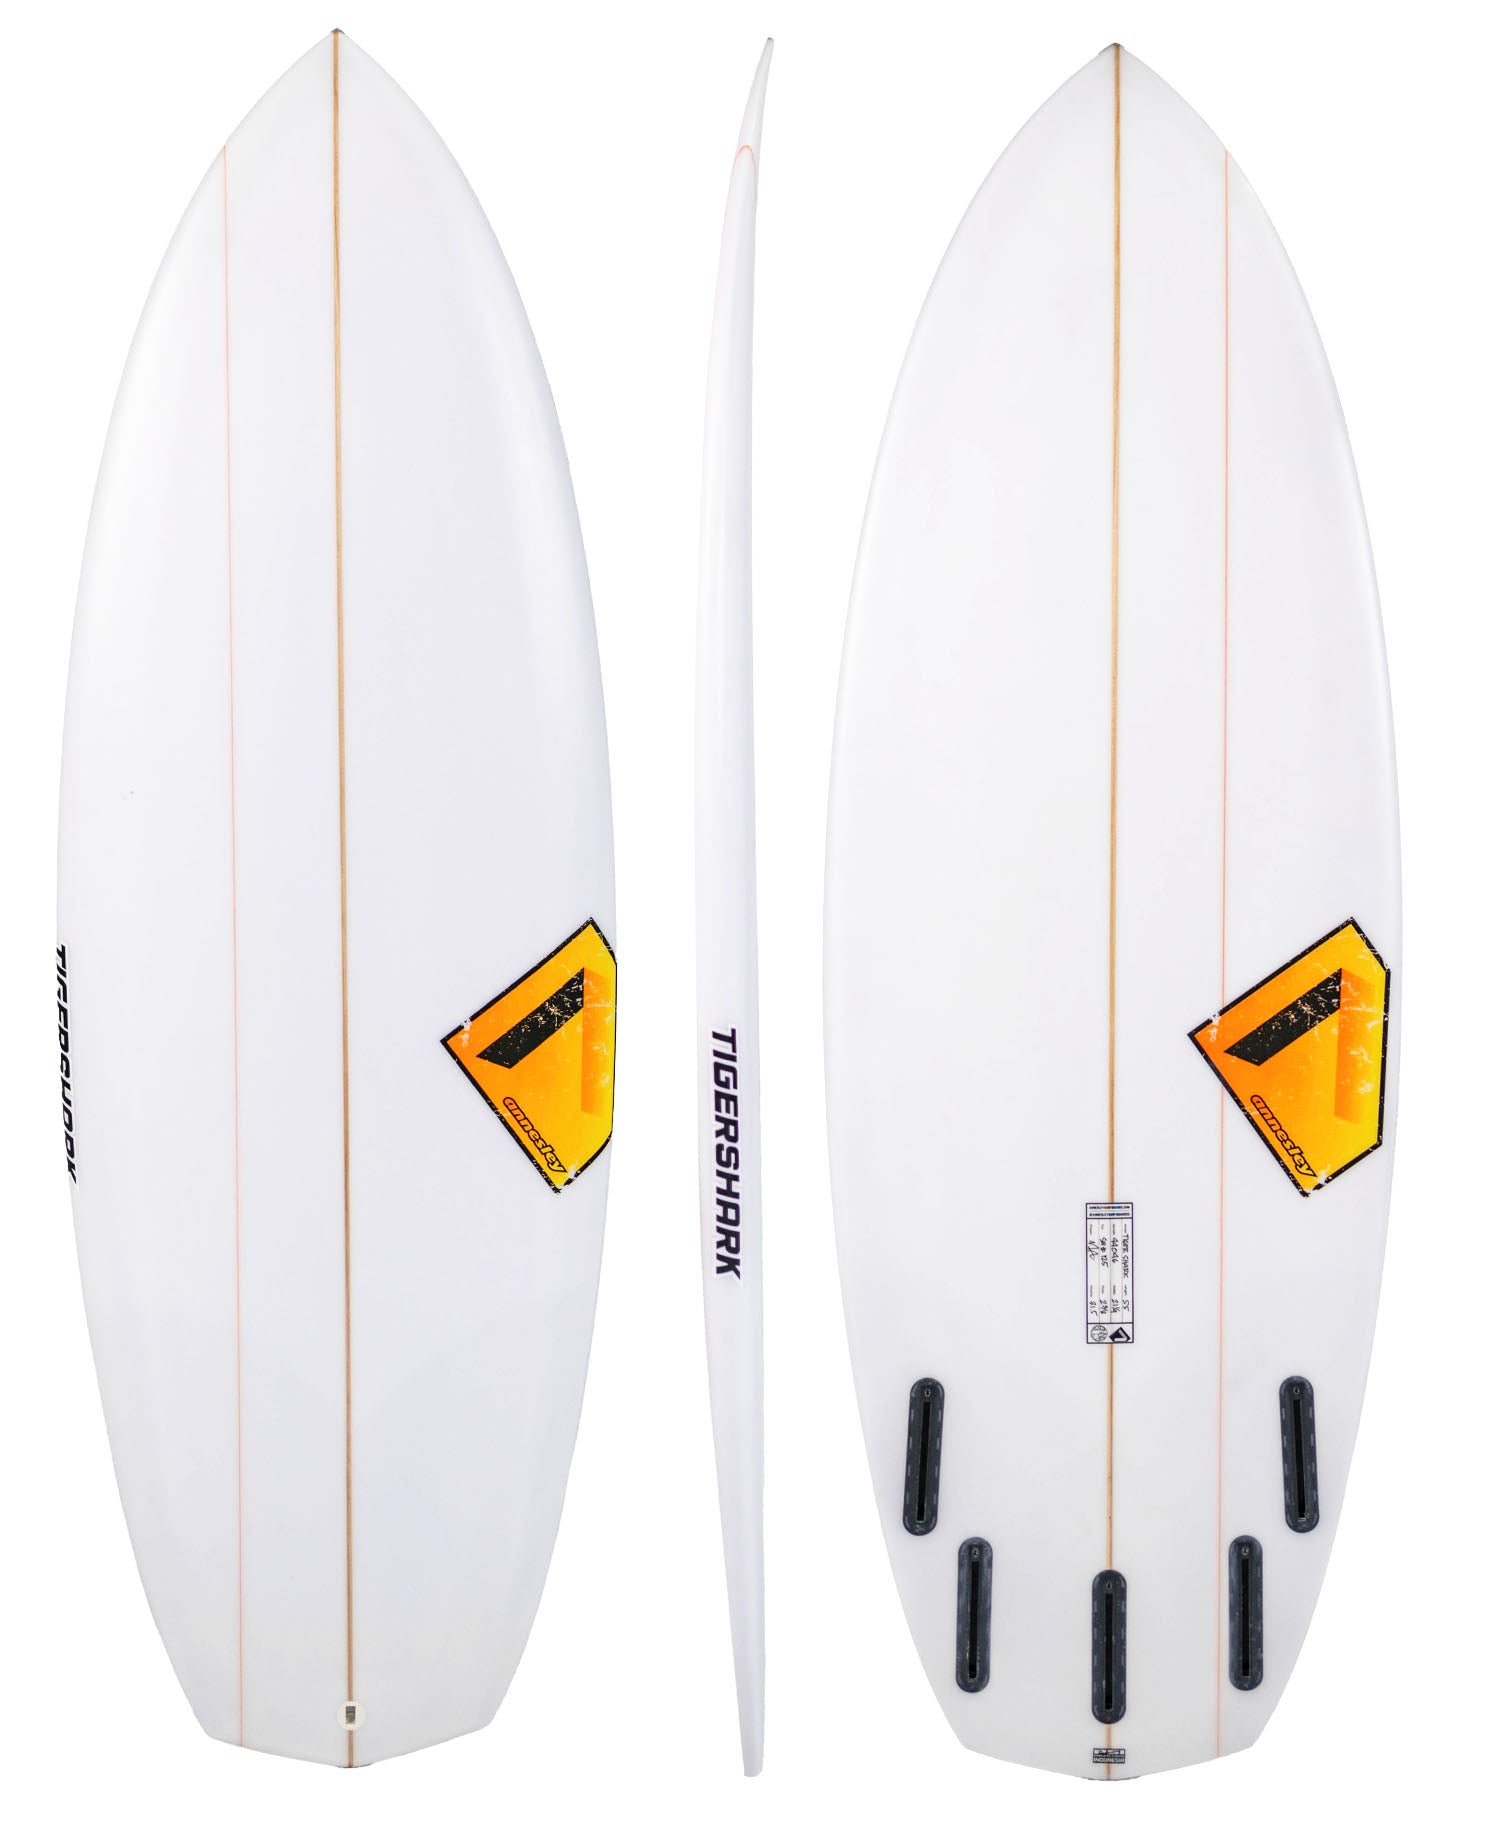 Surf Shops Australia, Surf Gear Delivered To Your Door